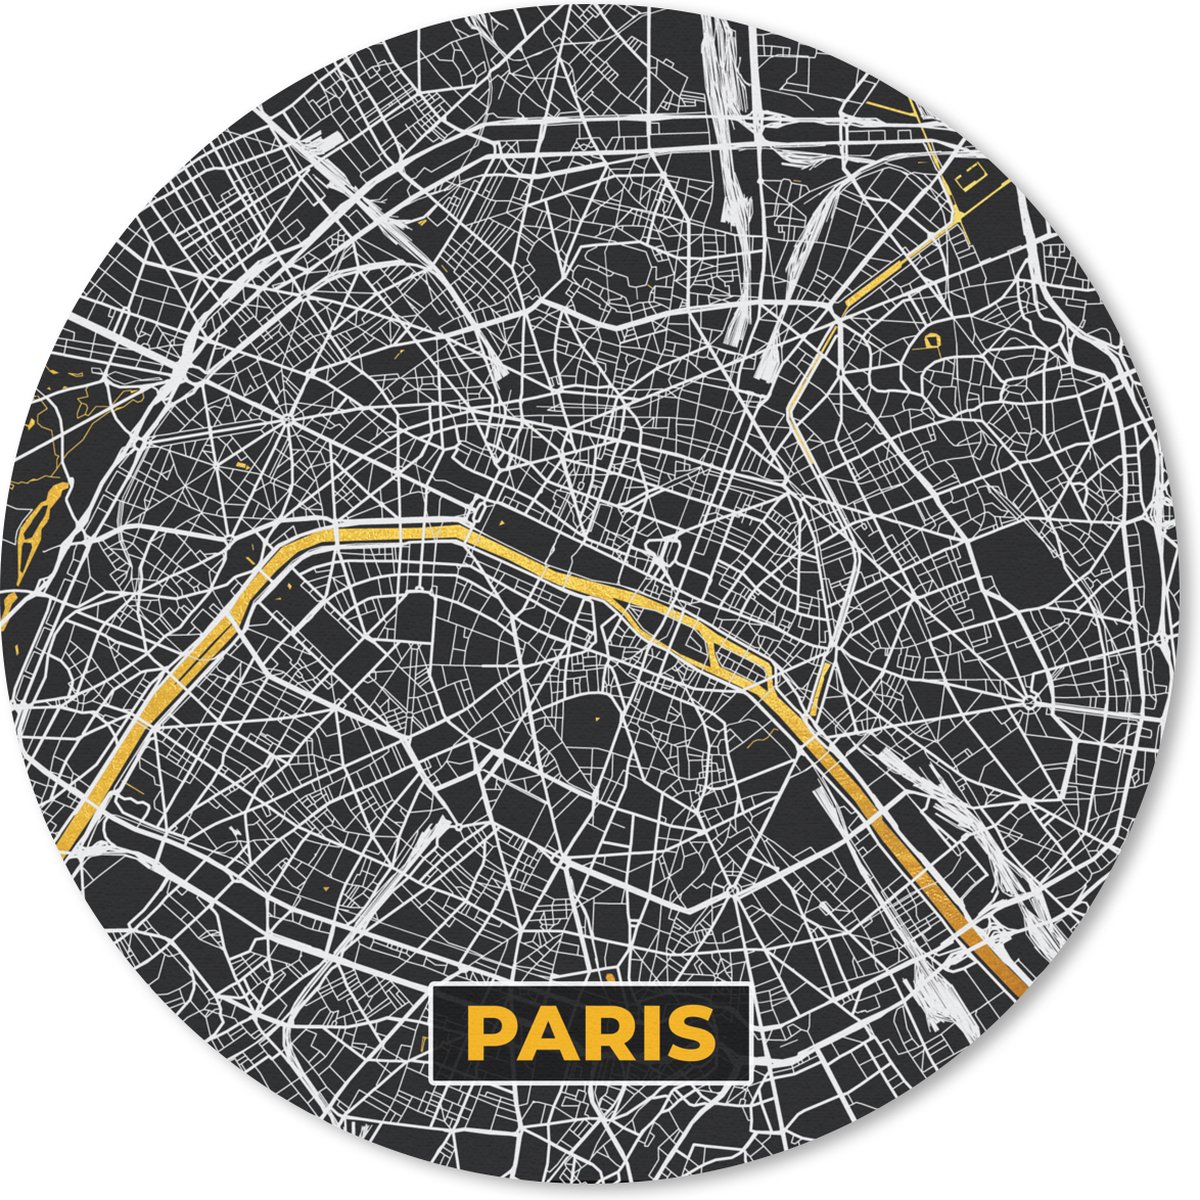 Muismat - Mousepad - Rond - Frankrijk – Paris - Kaart – Plattegrond – Stadskaart - 20x20 cm - Ronde muismat